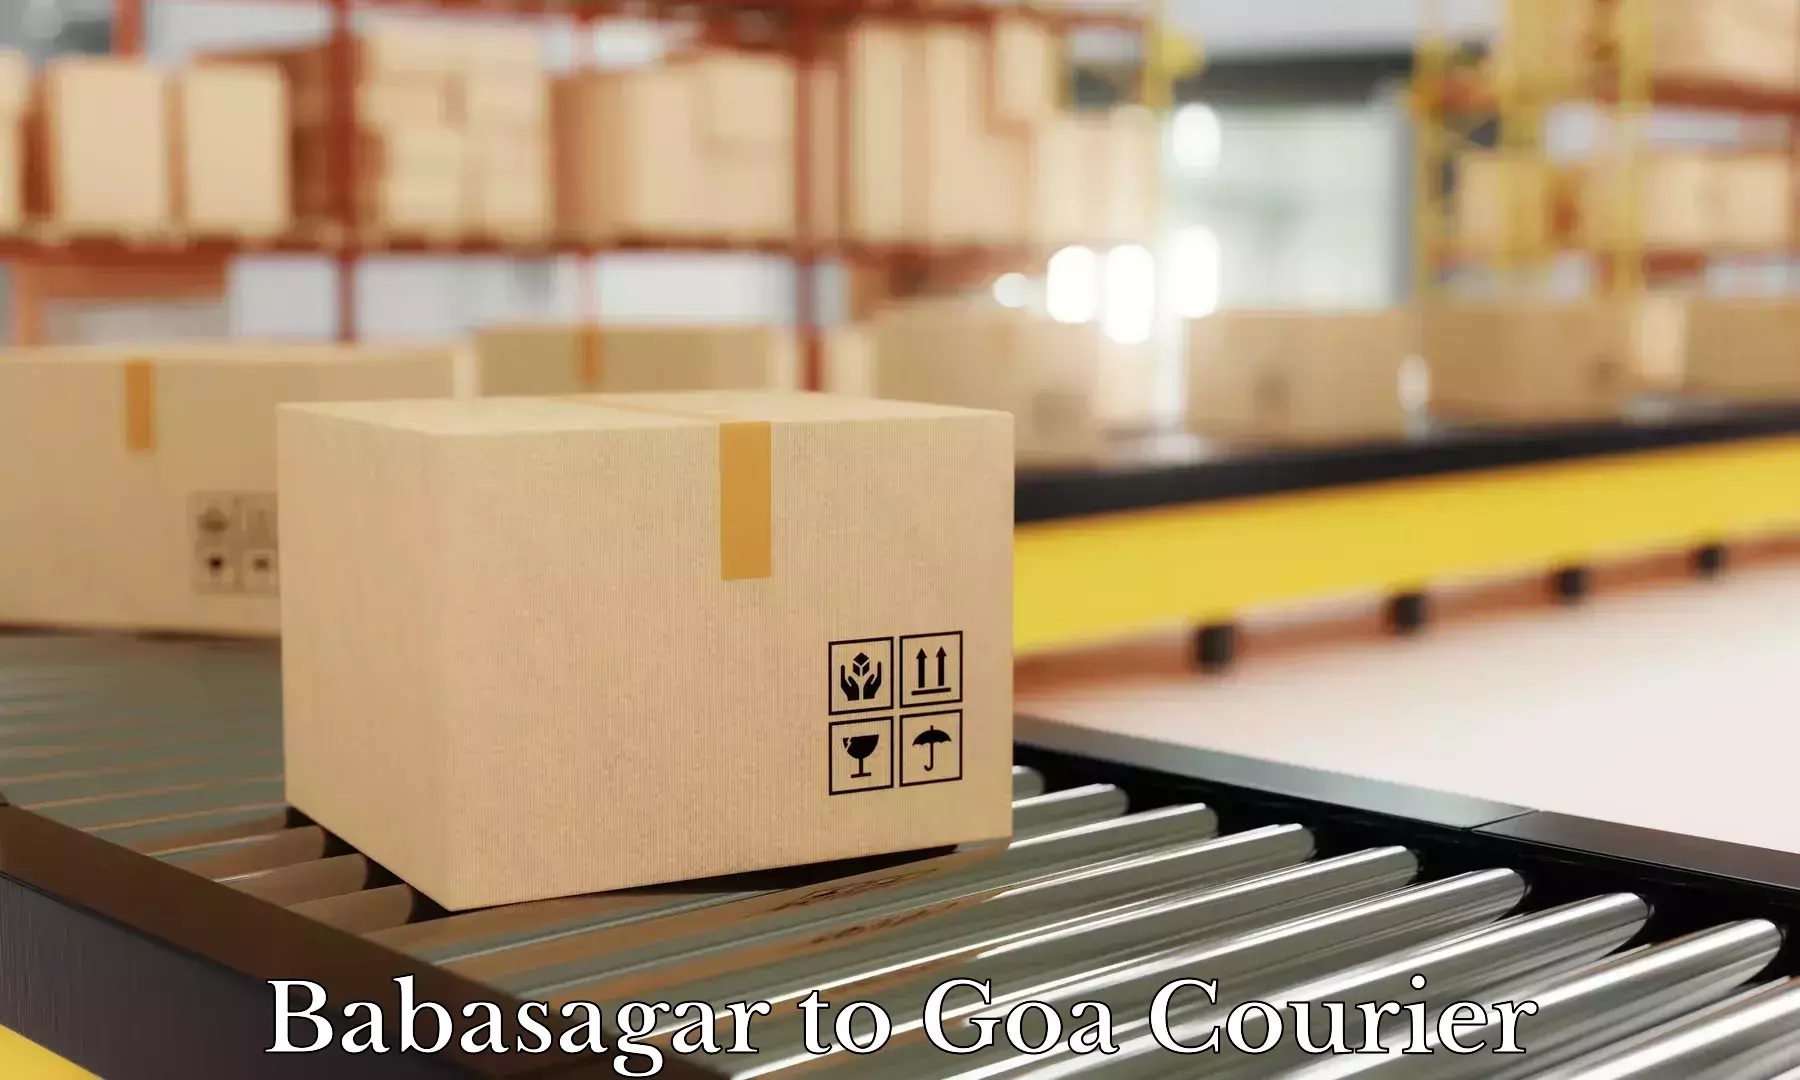 Luggage transport service Babasagar to Goa